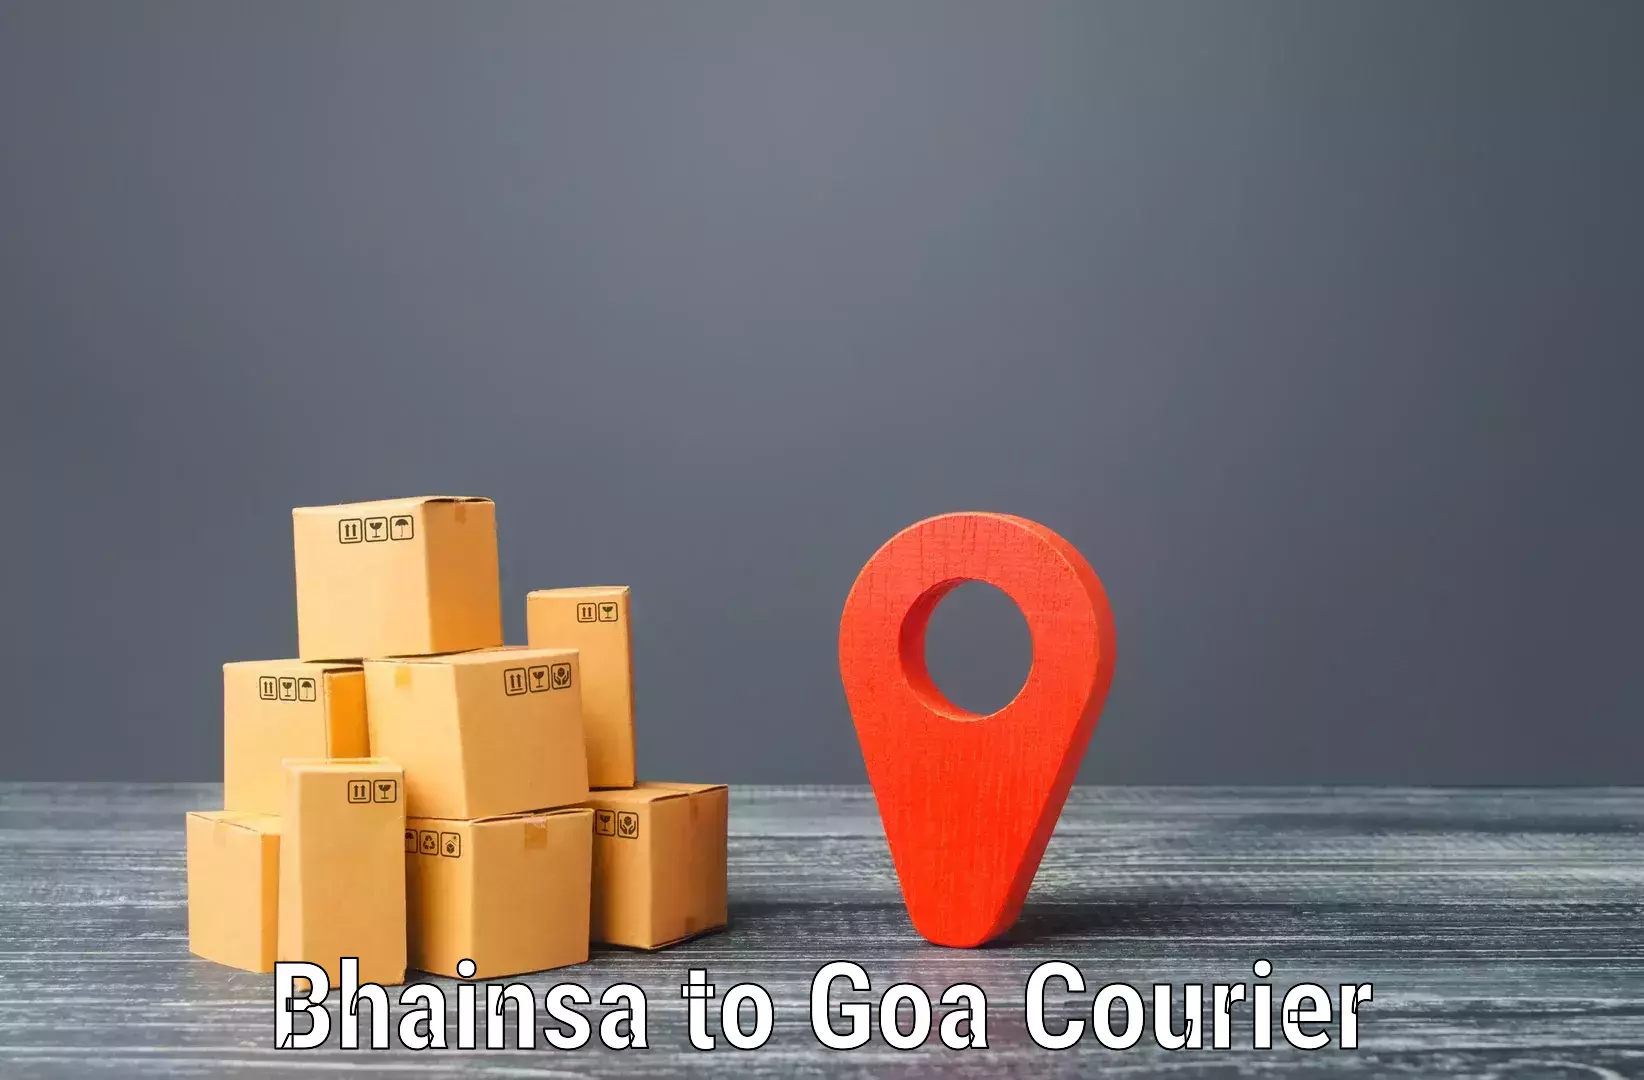 Smart courier technologies Bhainsa to Mormugao Port